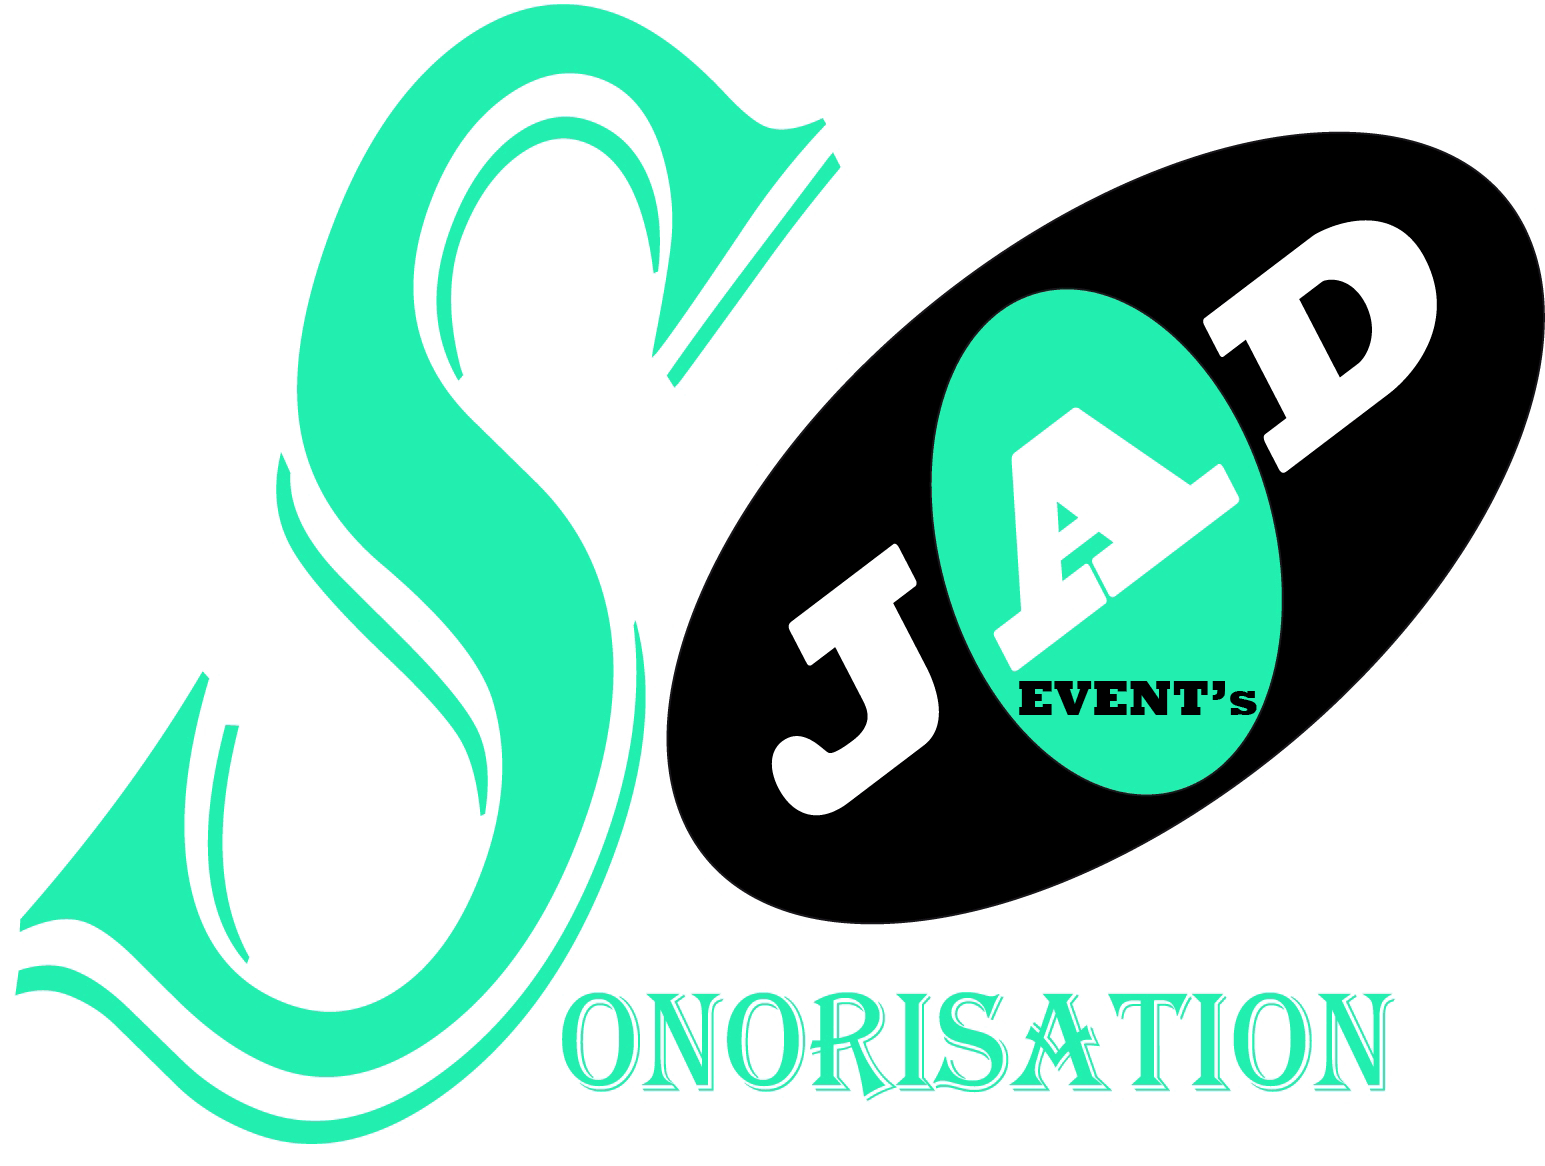 JAD EVENT's